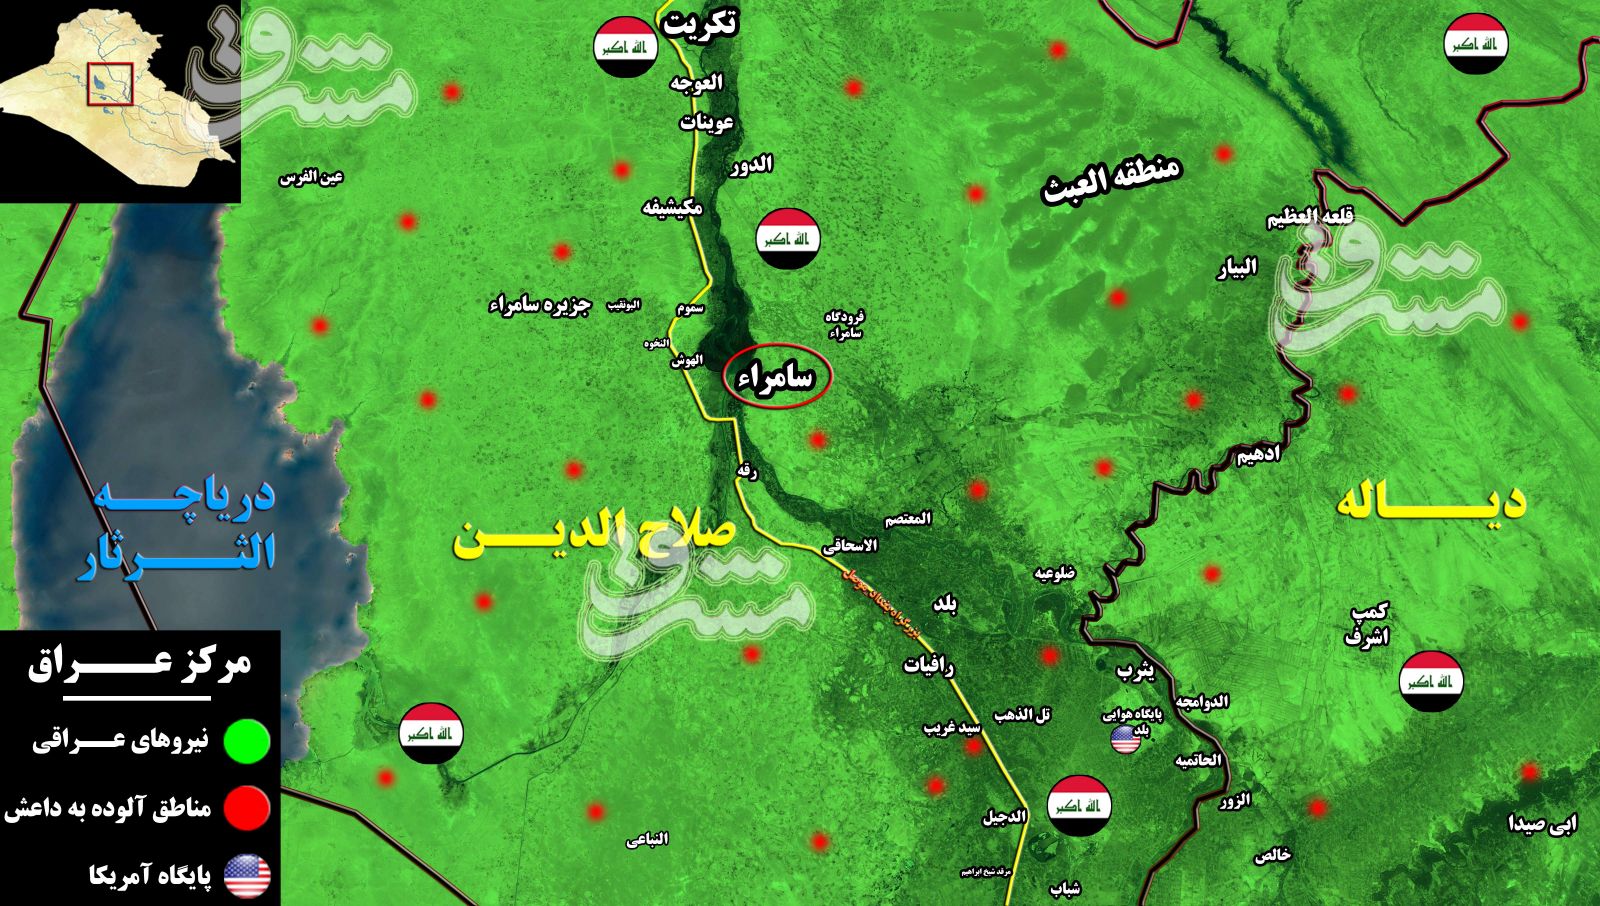 قدرت‌نمایی داعش در عراق زیر سایه افزایش اختلافات گروه‌های سیاسی/ خطر از بیخ گوش شهرستان نفتی «بیجی» گذشت +نقشه میدانی